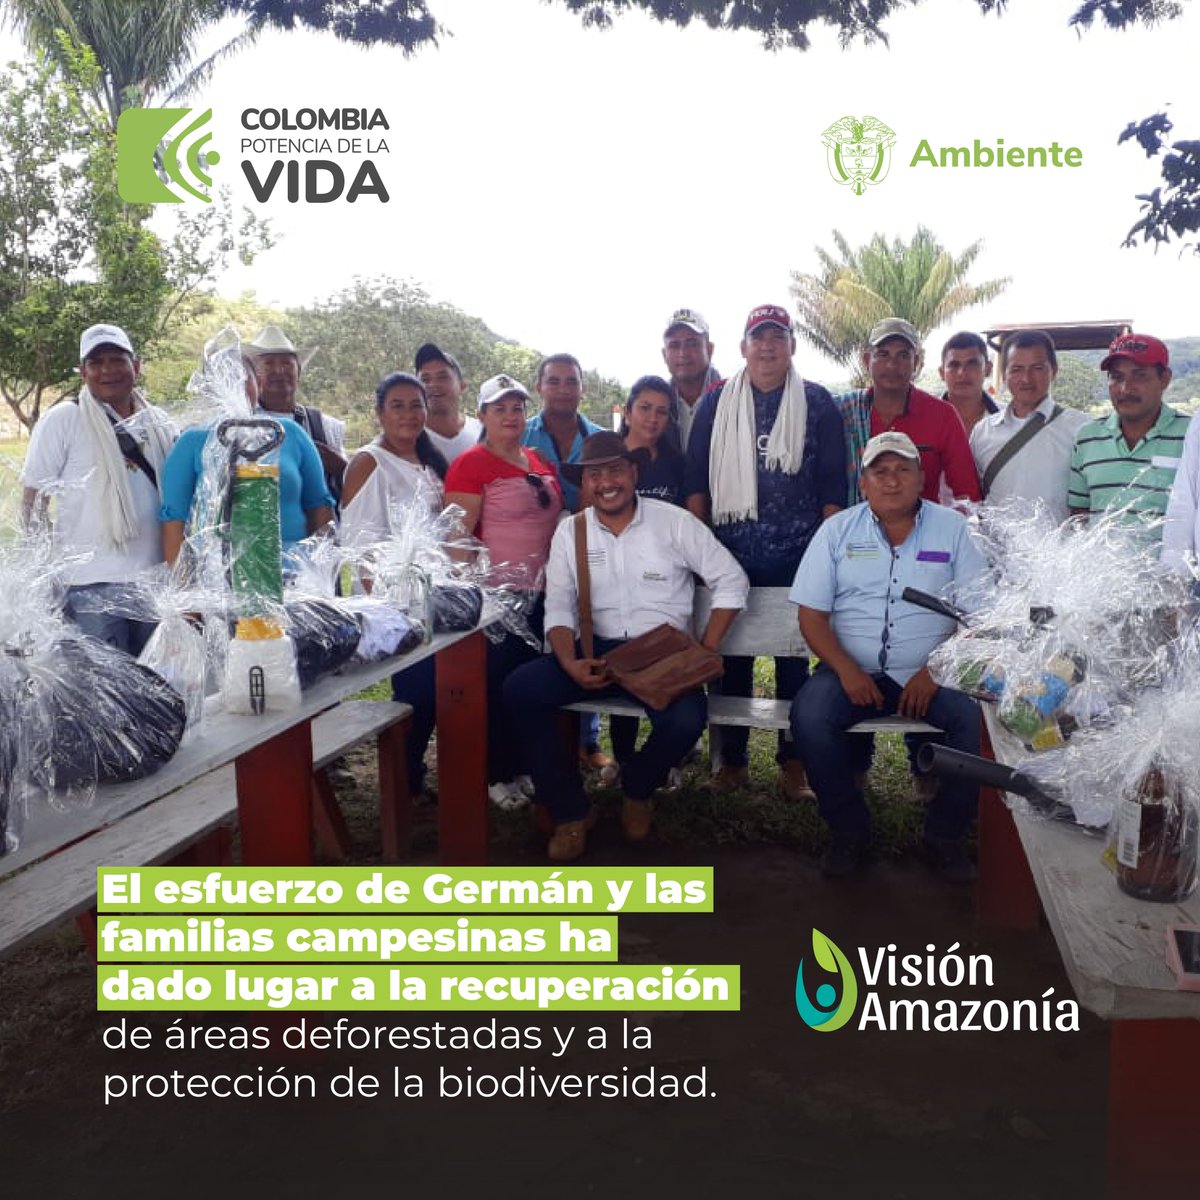 VisionAmazonia tweet picture